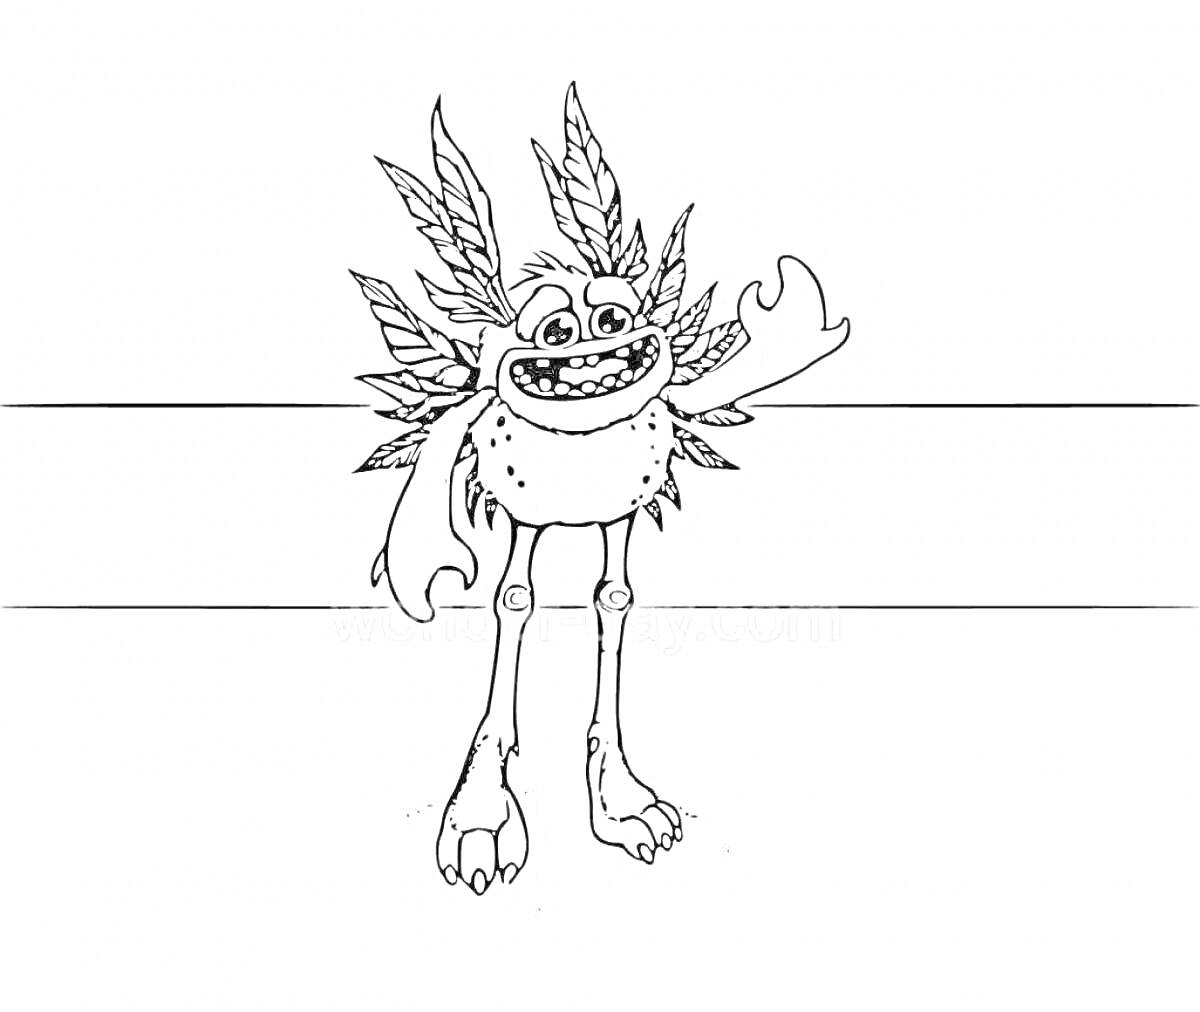 Раскраска Монстр с листьями на голове и четырьмя руками на фоне горизонтальных линий